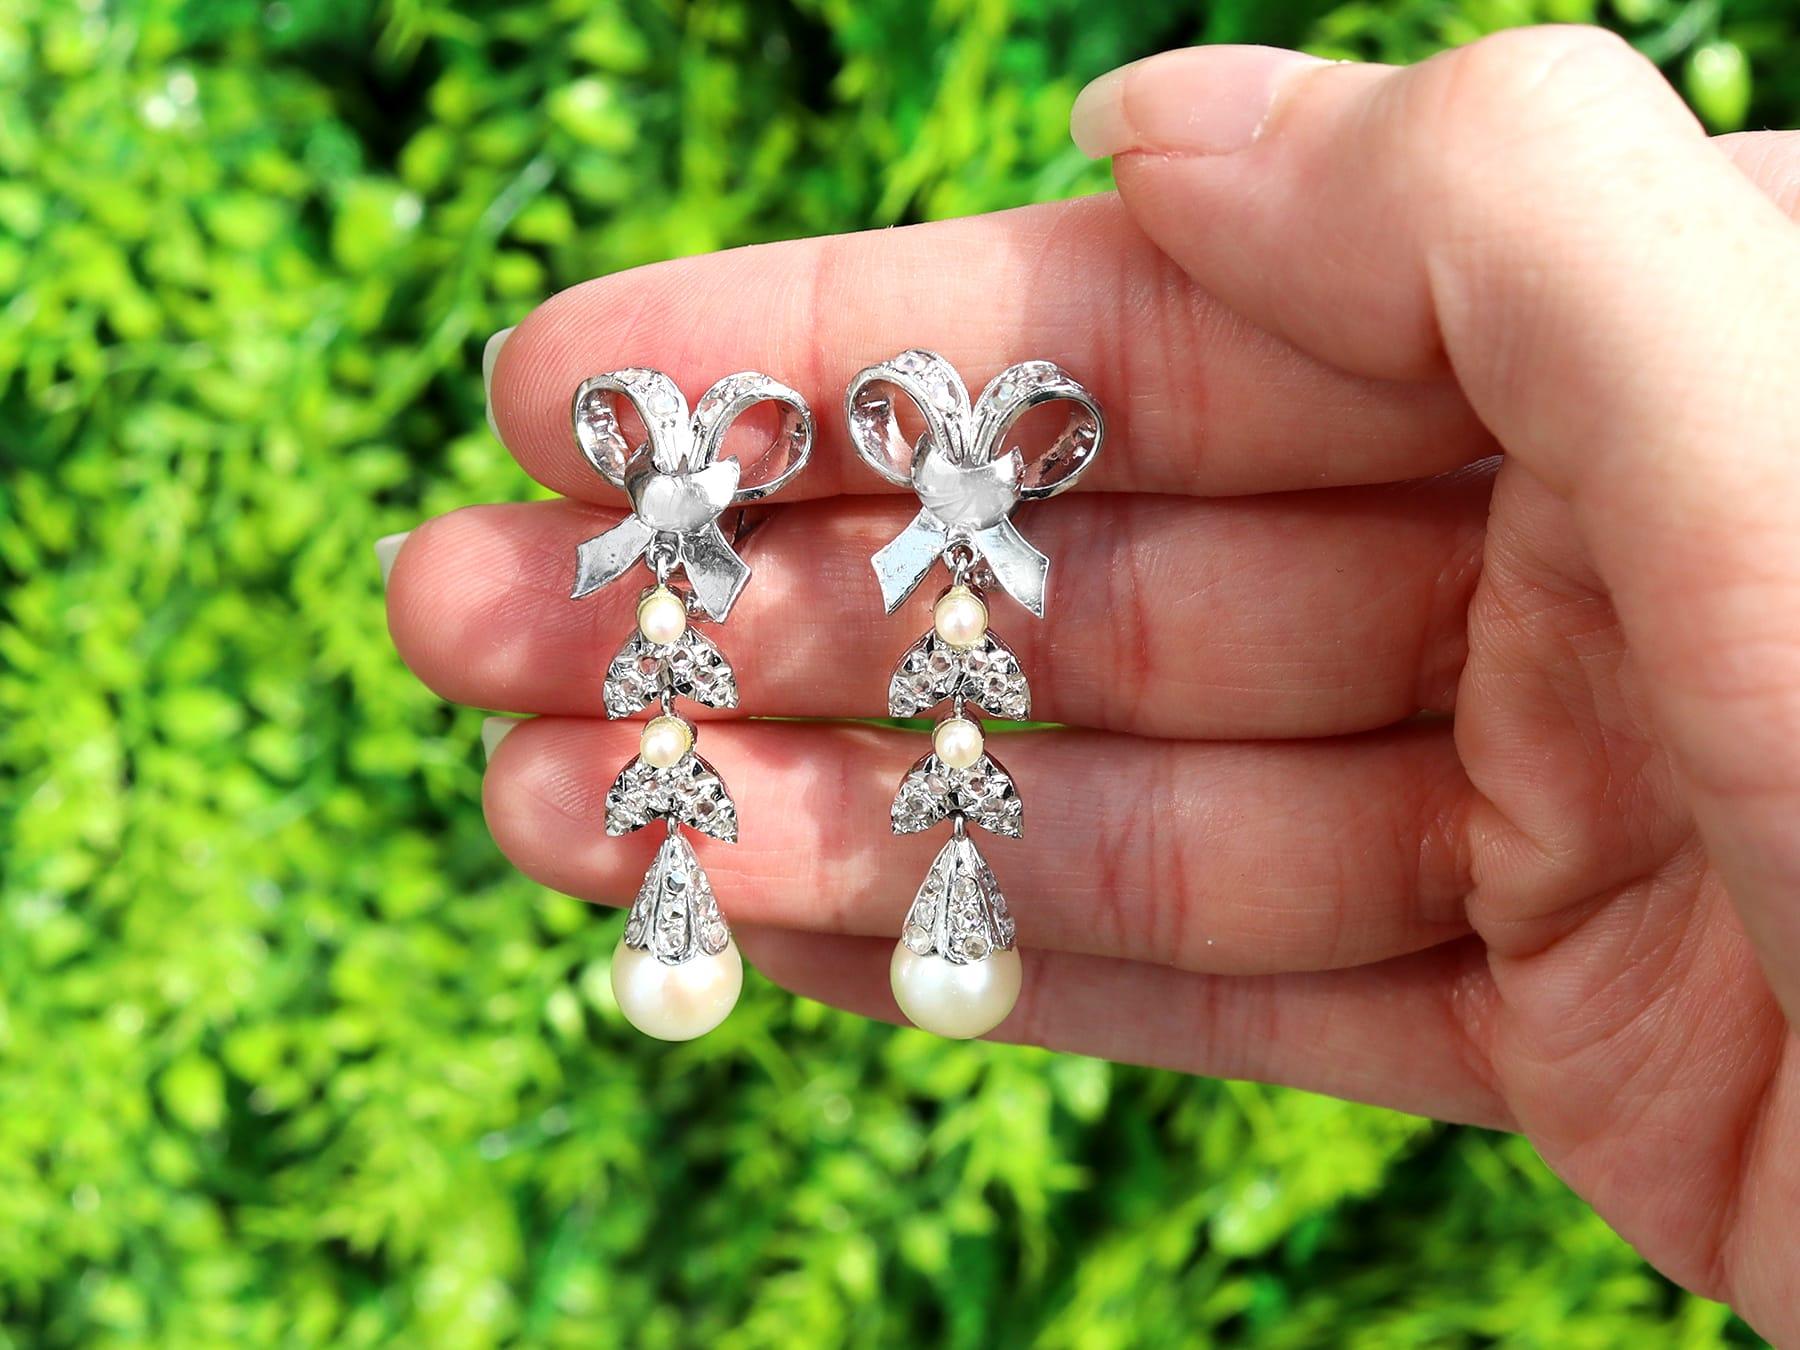 Ein feines und beeindruckendes Paar Vintage-Ohrringe mit 0,54 Karat Diamanten und Zuchtperlen aus 18 Karat Weißgold mit Clip; Teil unserer vielfältigen Vintage-Schmuck- und Nachlass-Schmuck-Kollektionen.

Diese feinen und eindrucksvollen Perlen- und